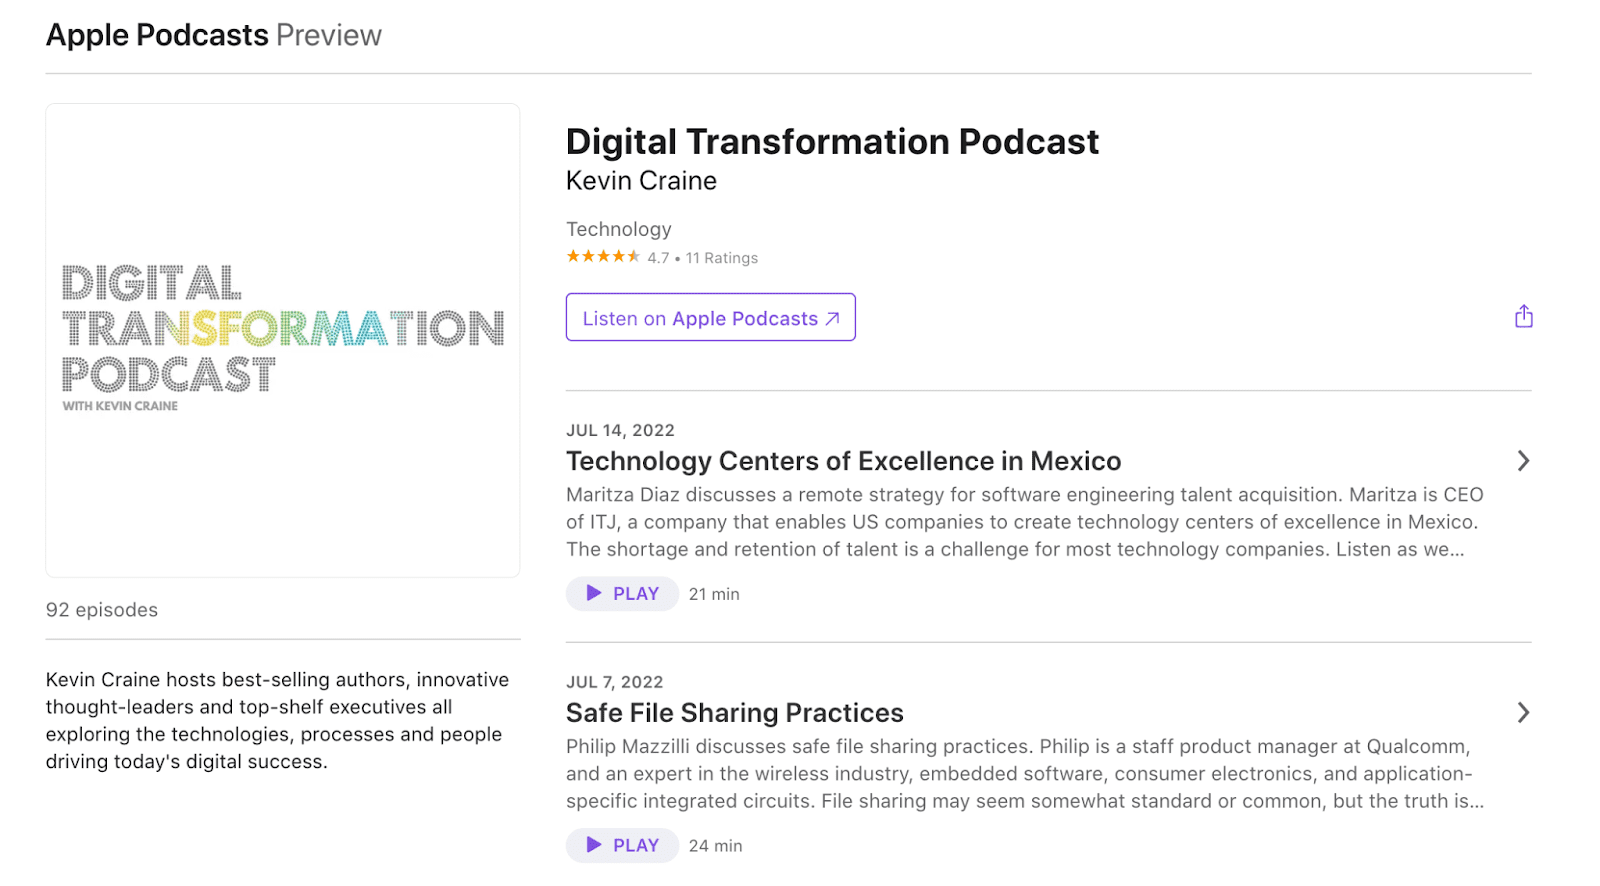 Digital Transformation Podcast